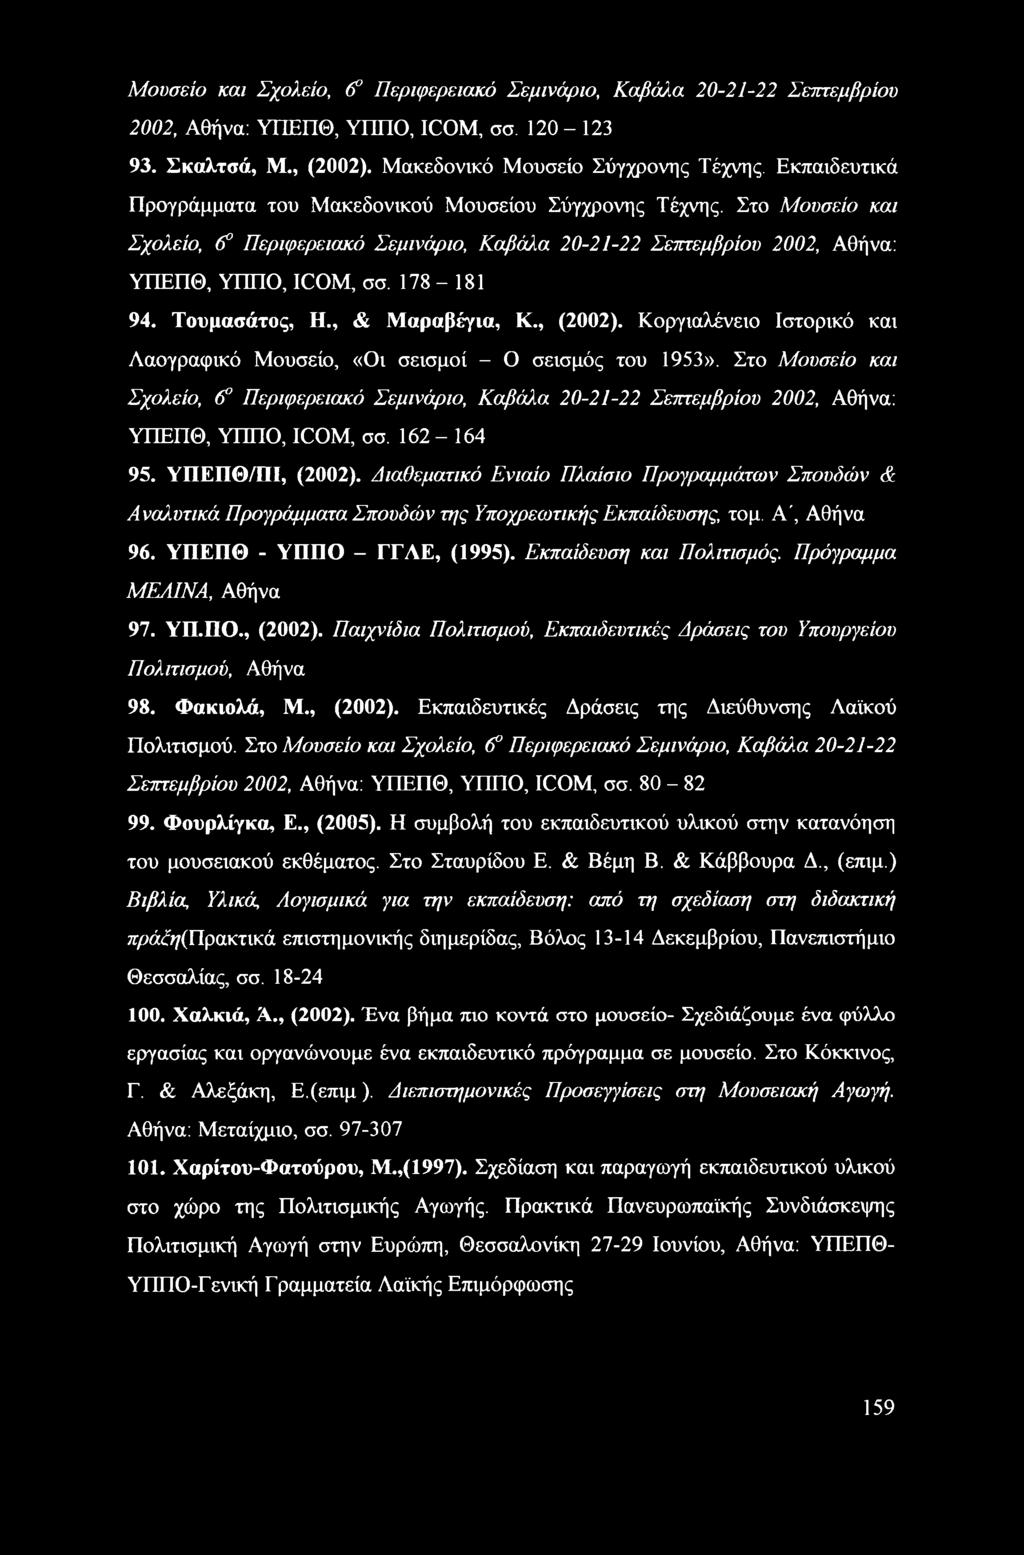 Τουμασάτος, Η., & Μαραβέγια, Κ., (2002). Κοργιαλένειο Ιστορικό και Λαογραφικό Μουσείο, «Οι σεισμοί - Ο σεισμός του 1953».